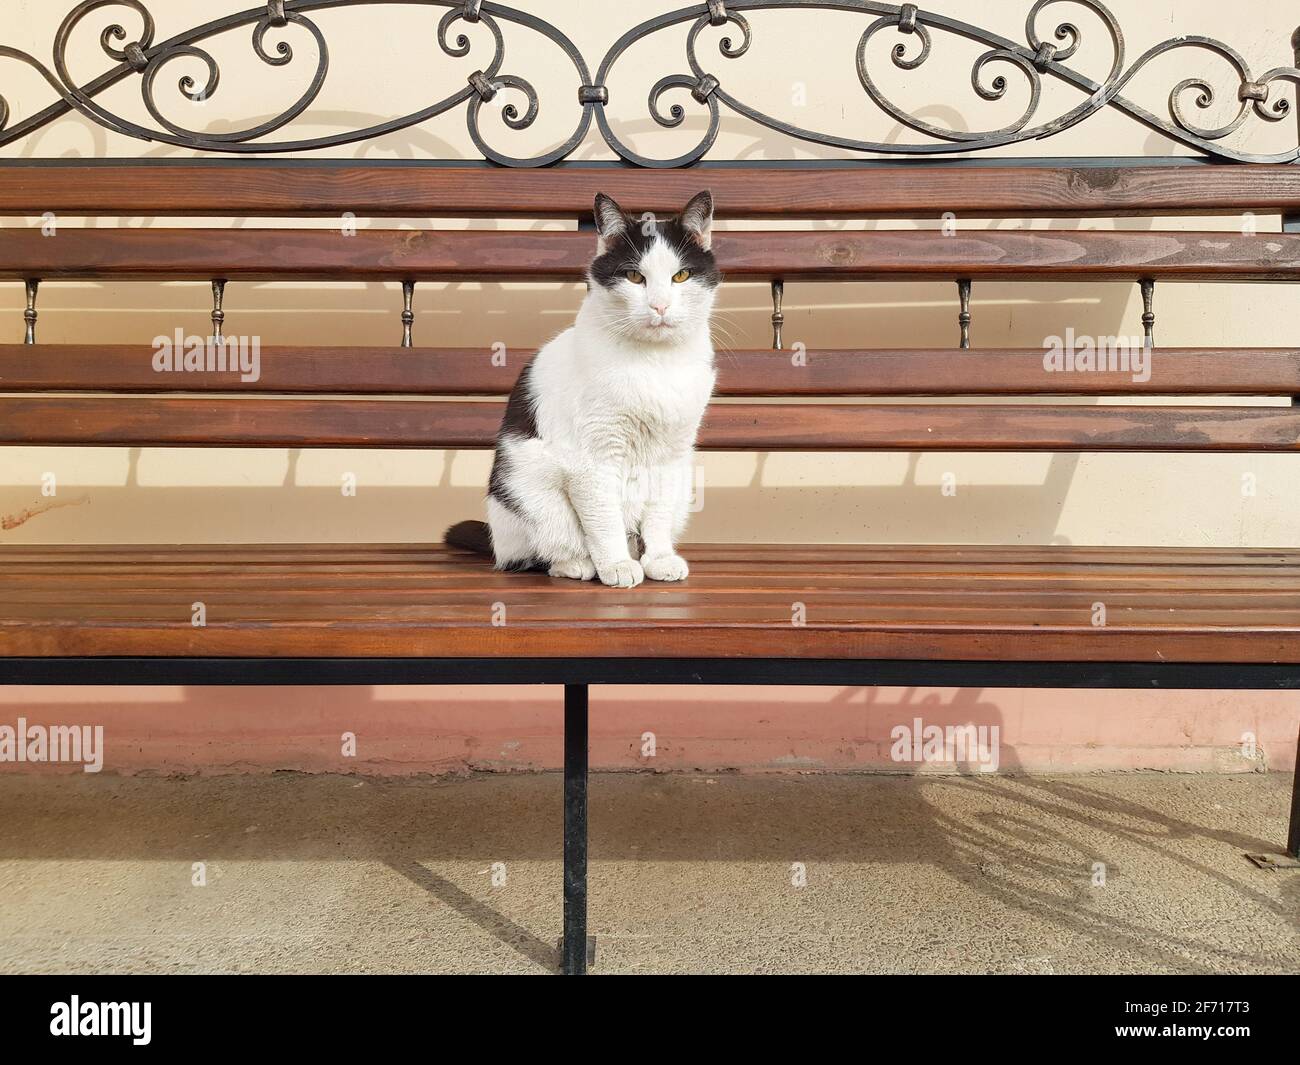 Un chat important est assis sur un banc. Gros plan Cat Banque D'Images